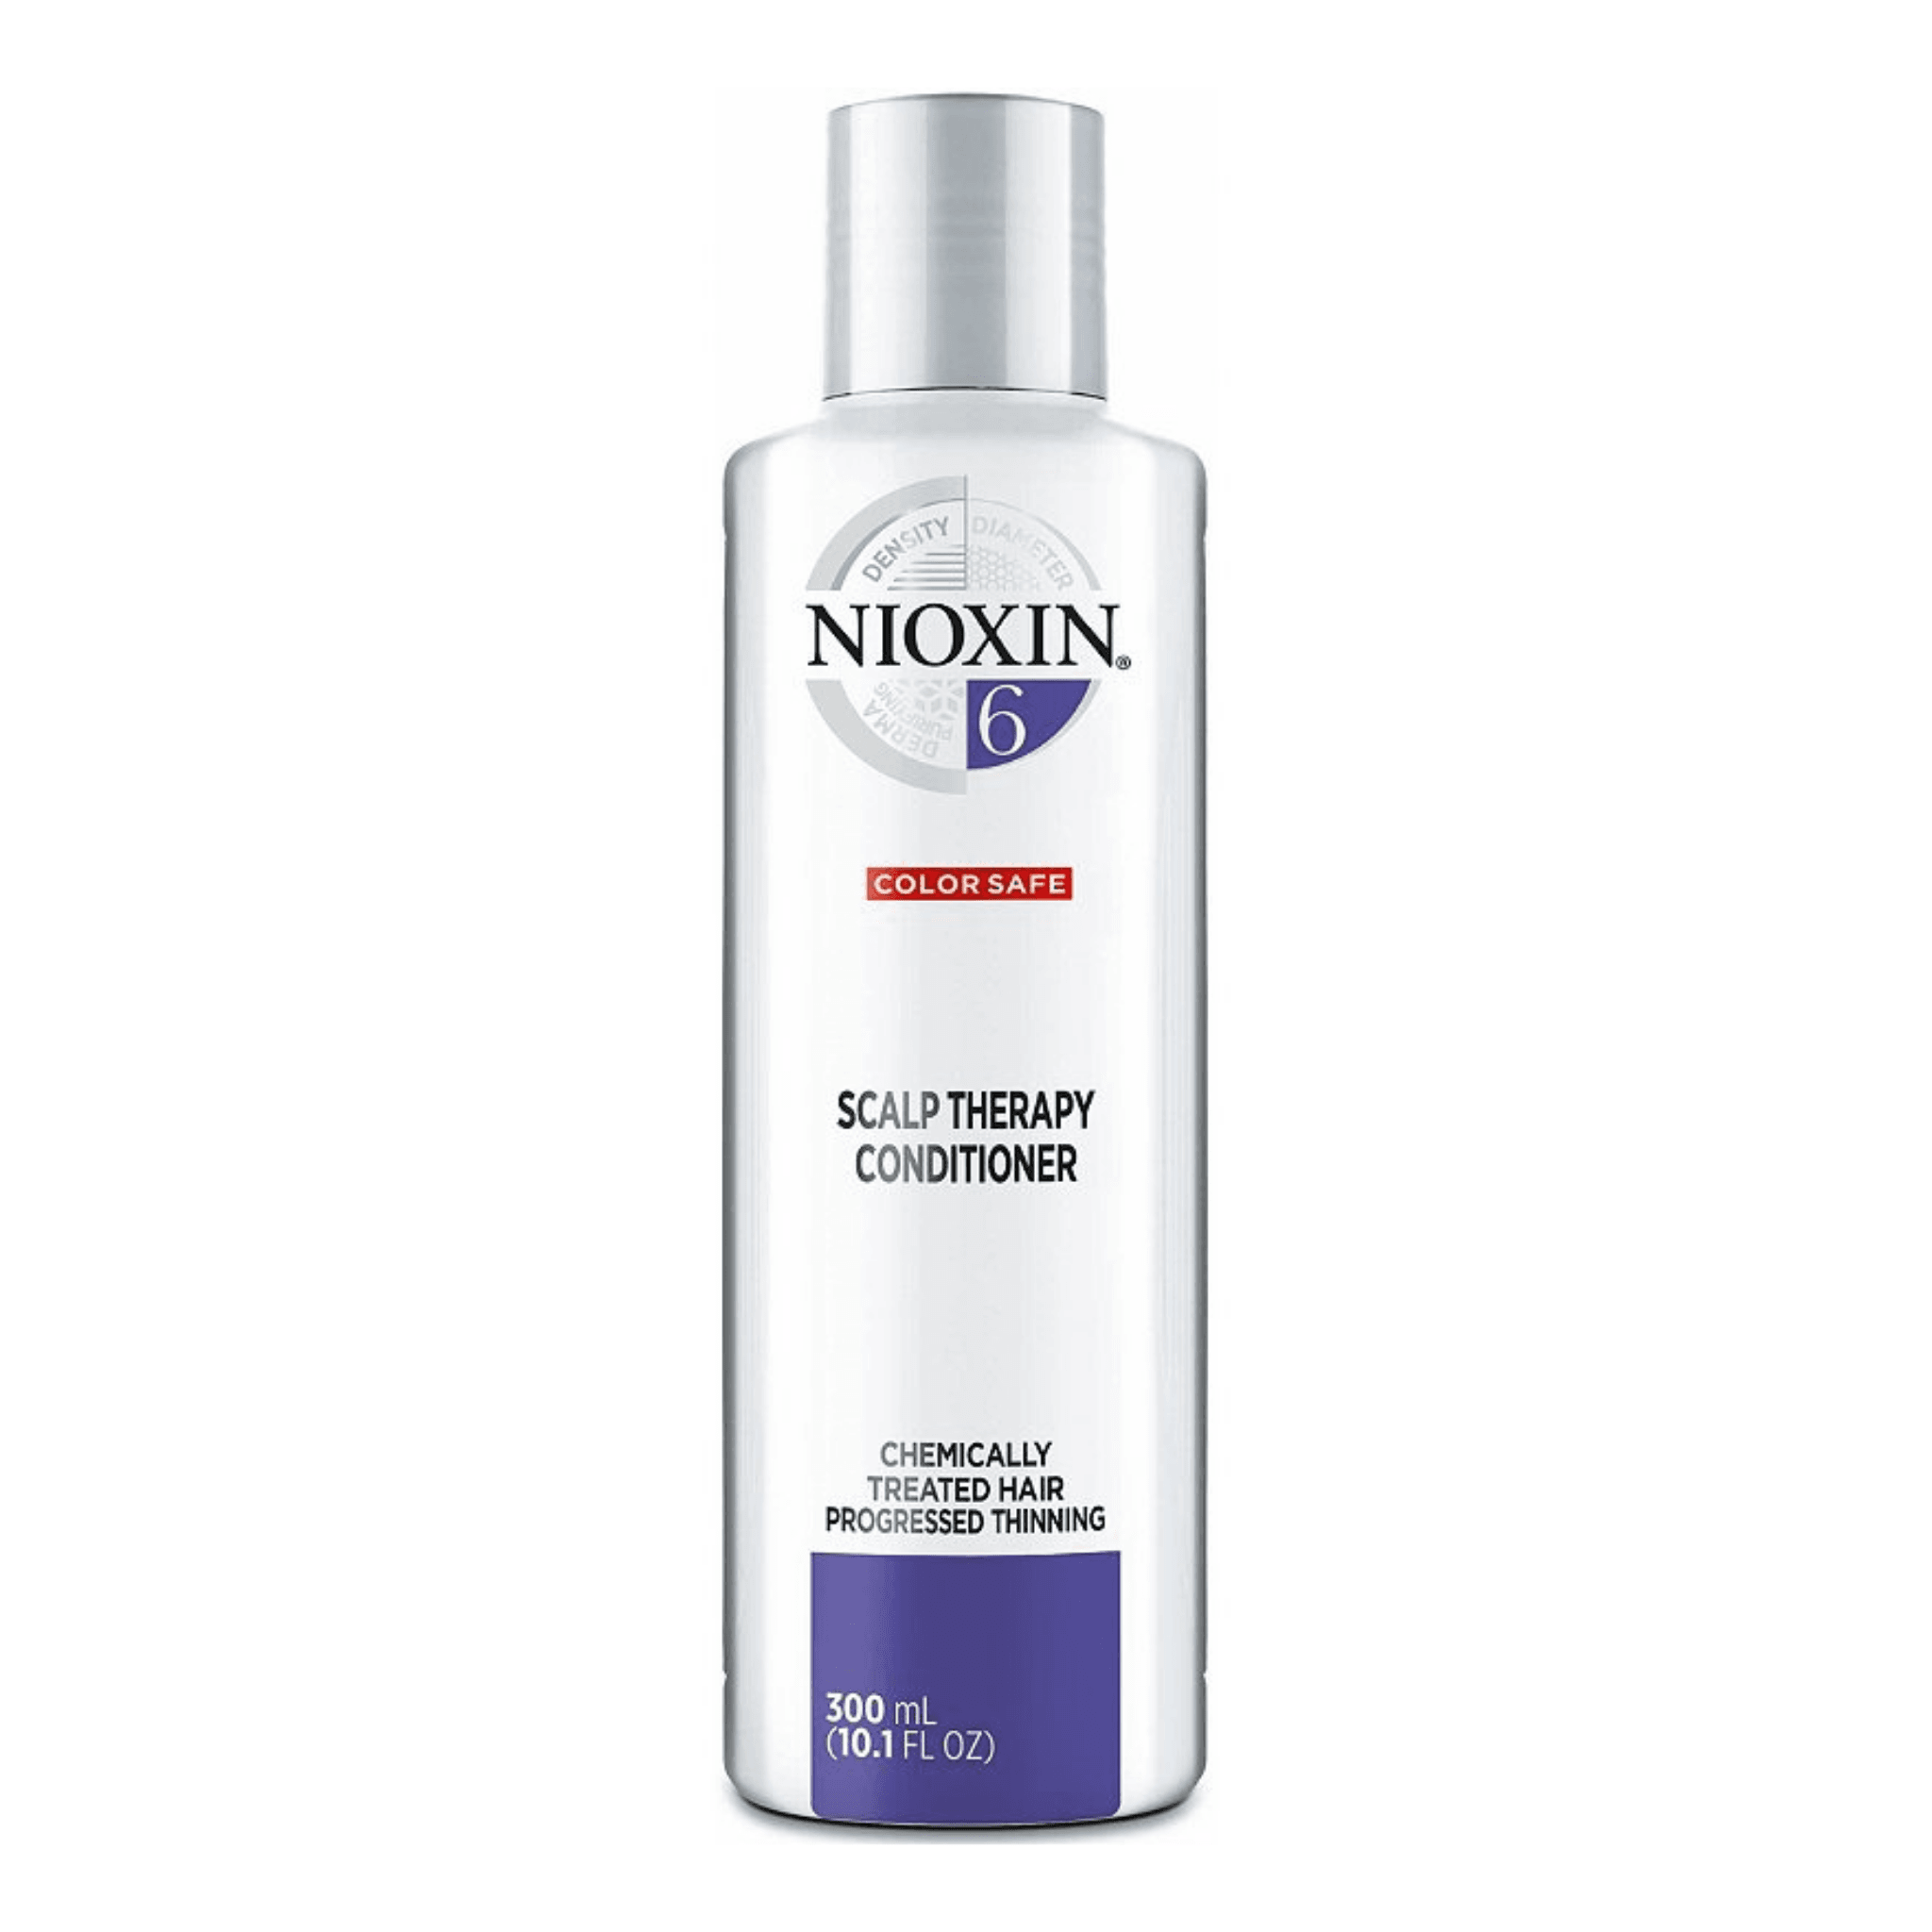 Nioxin. Revitalisant Système 6 - 300 ml - Concept C. Shop